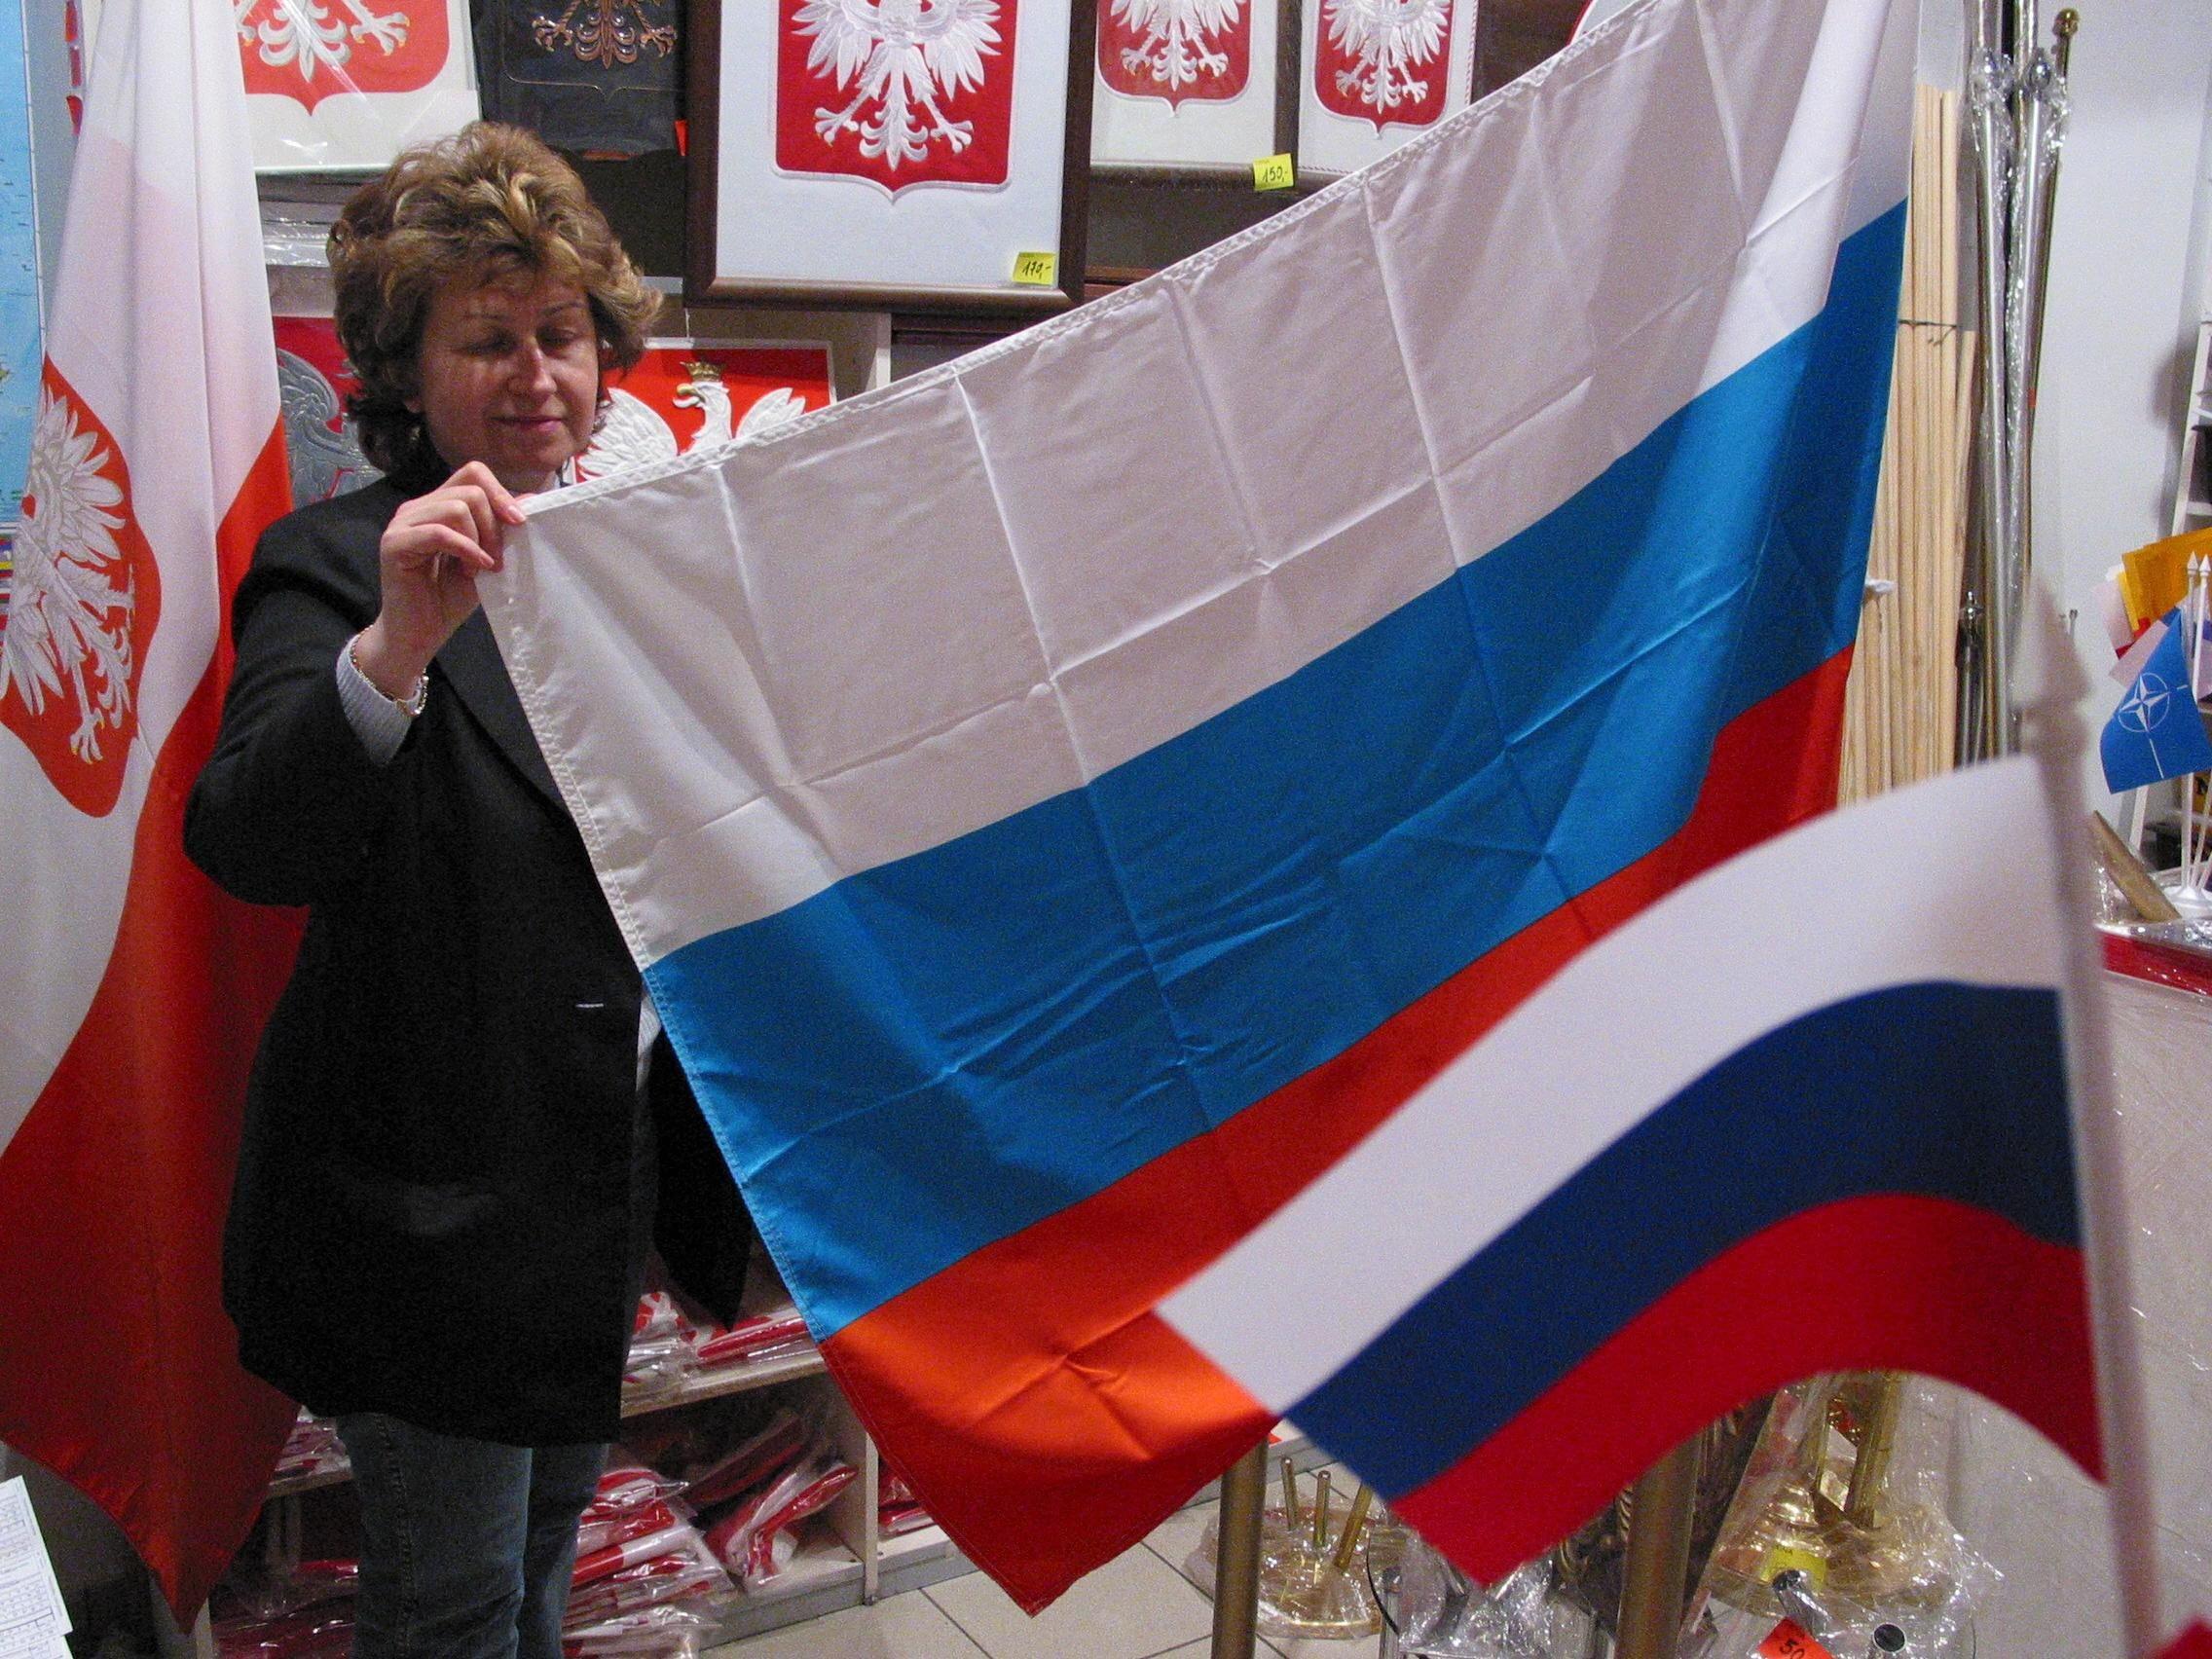 Kobieta pokazuje rosyjską flagę, na ścianie wiszą polskie orły herbowe